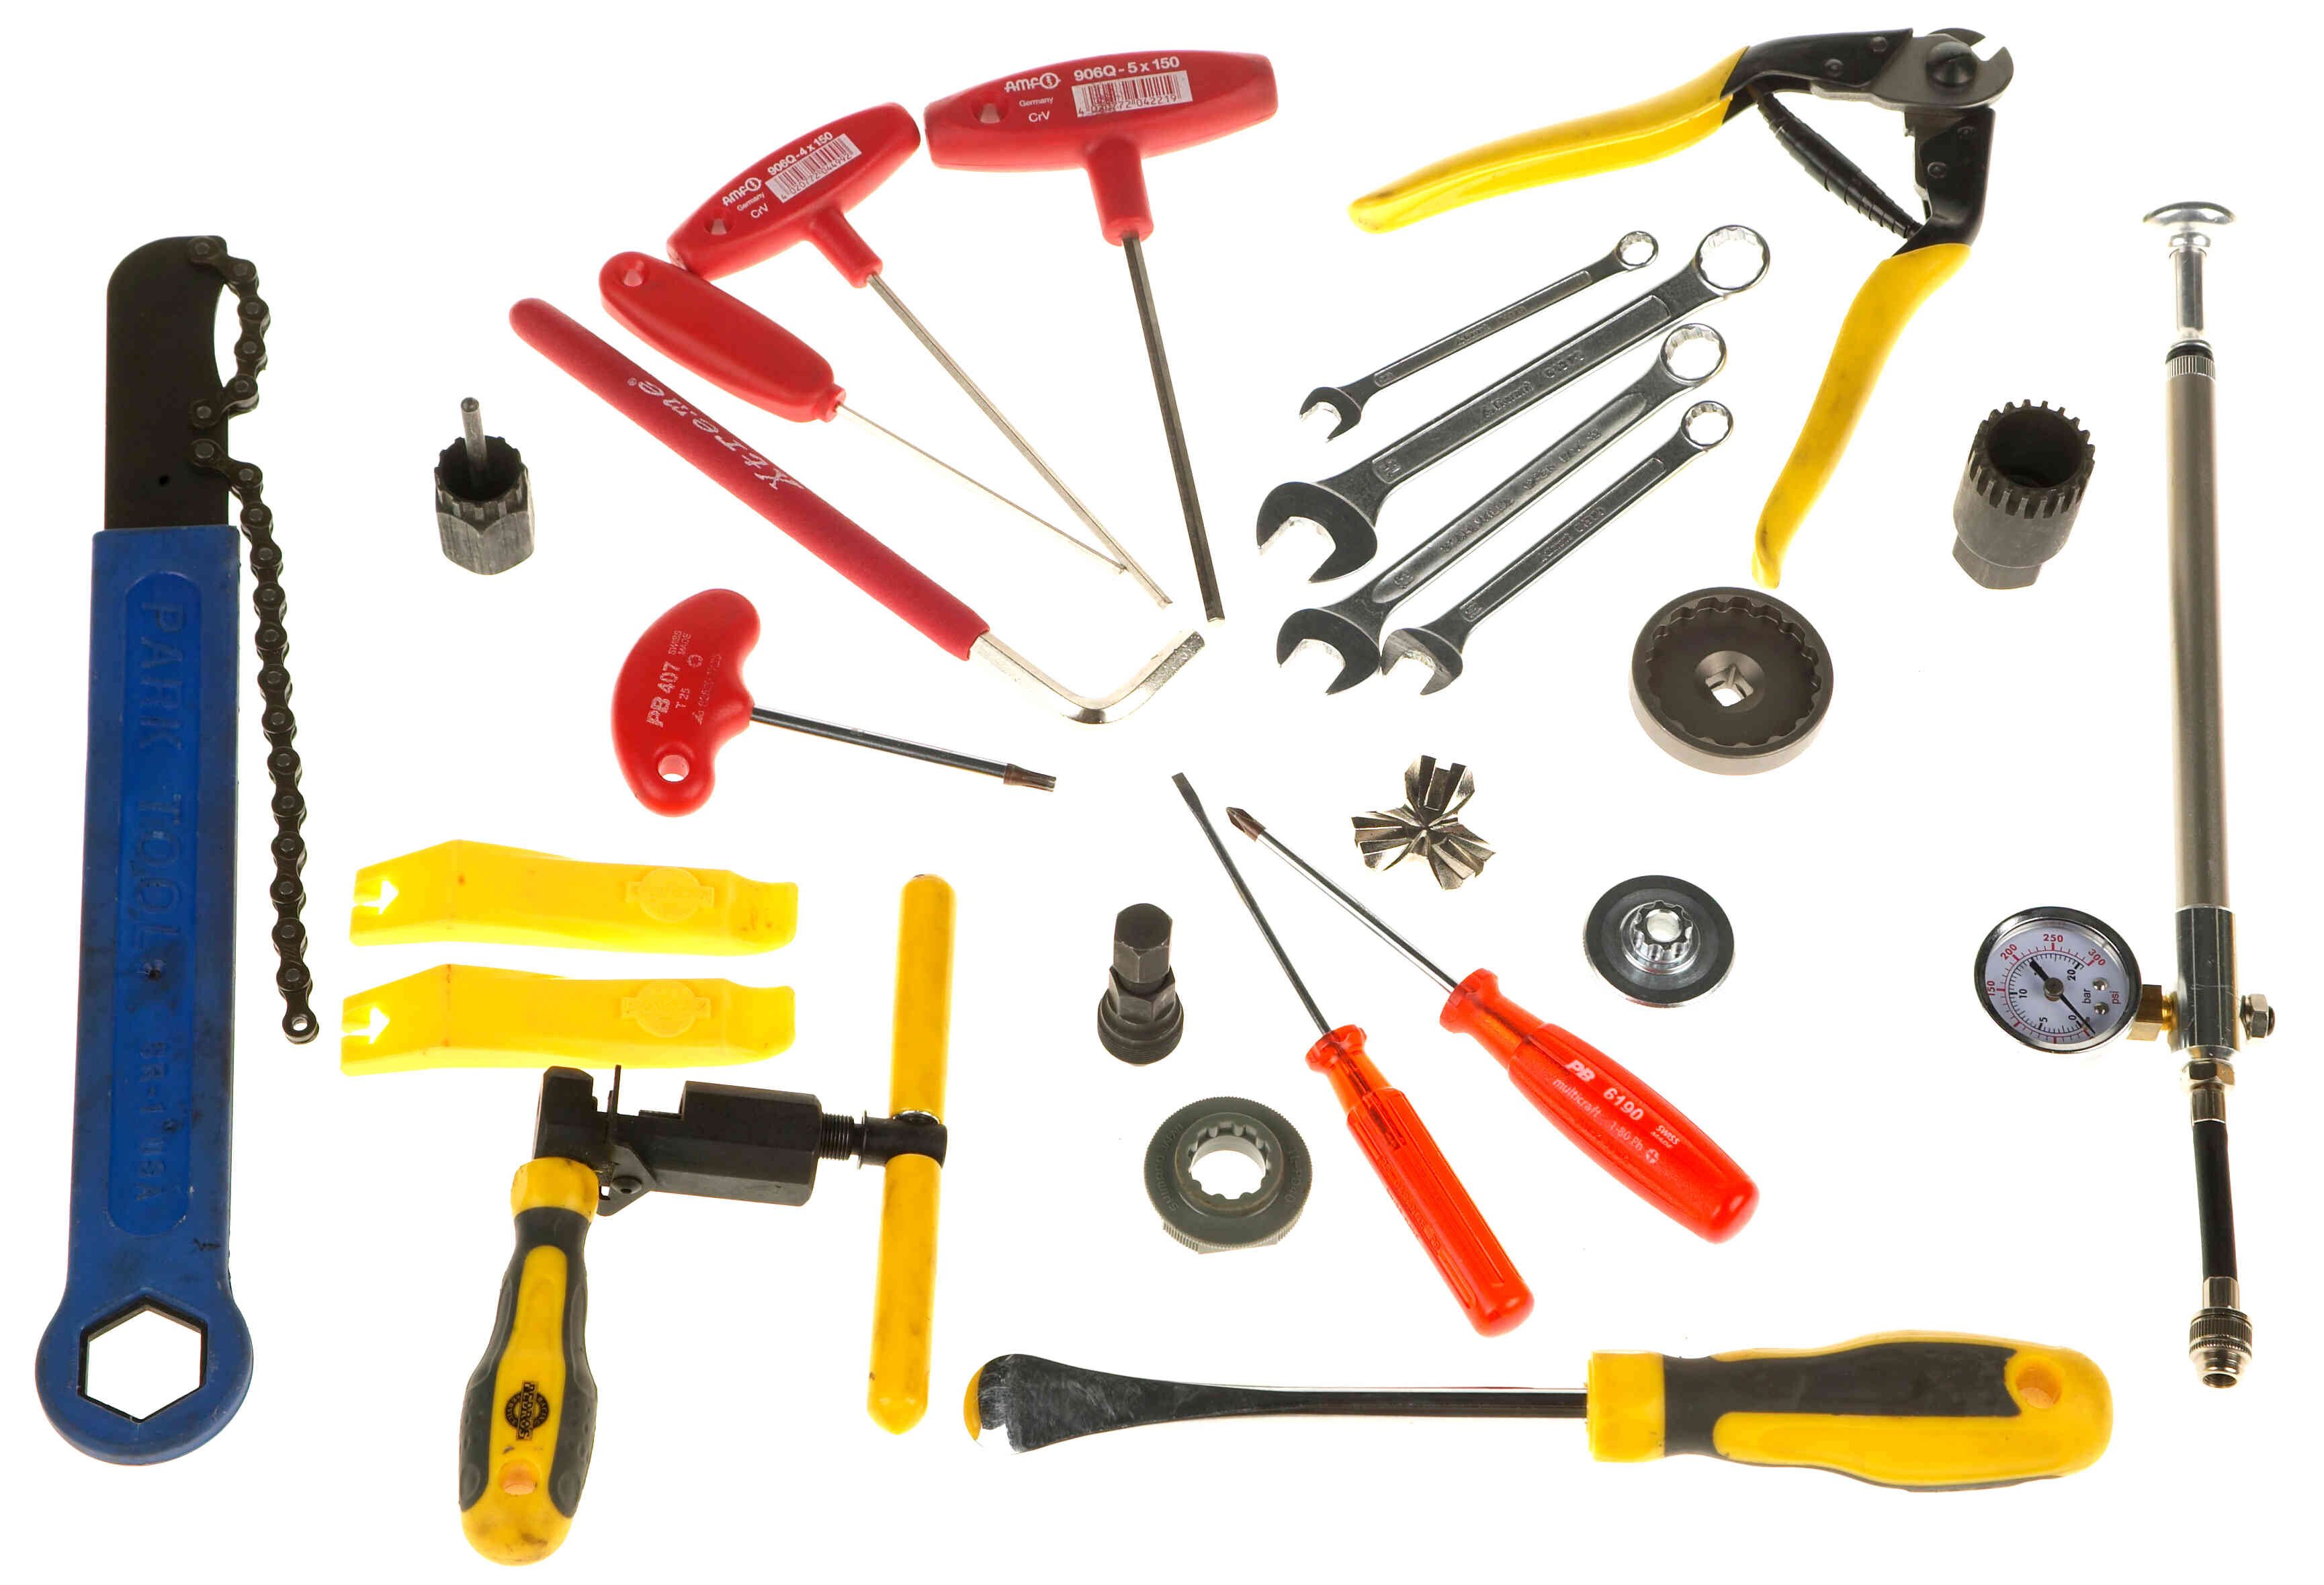 Werkstatt: Werkzeug für Hobby-Schrauber